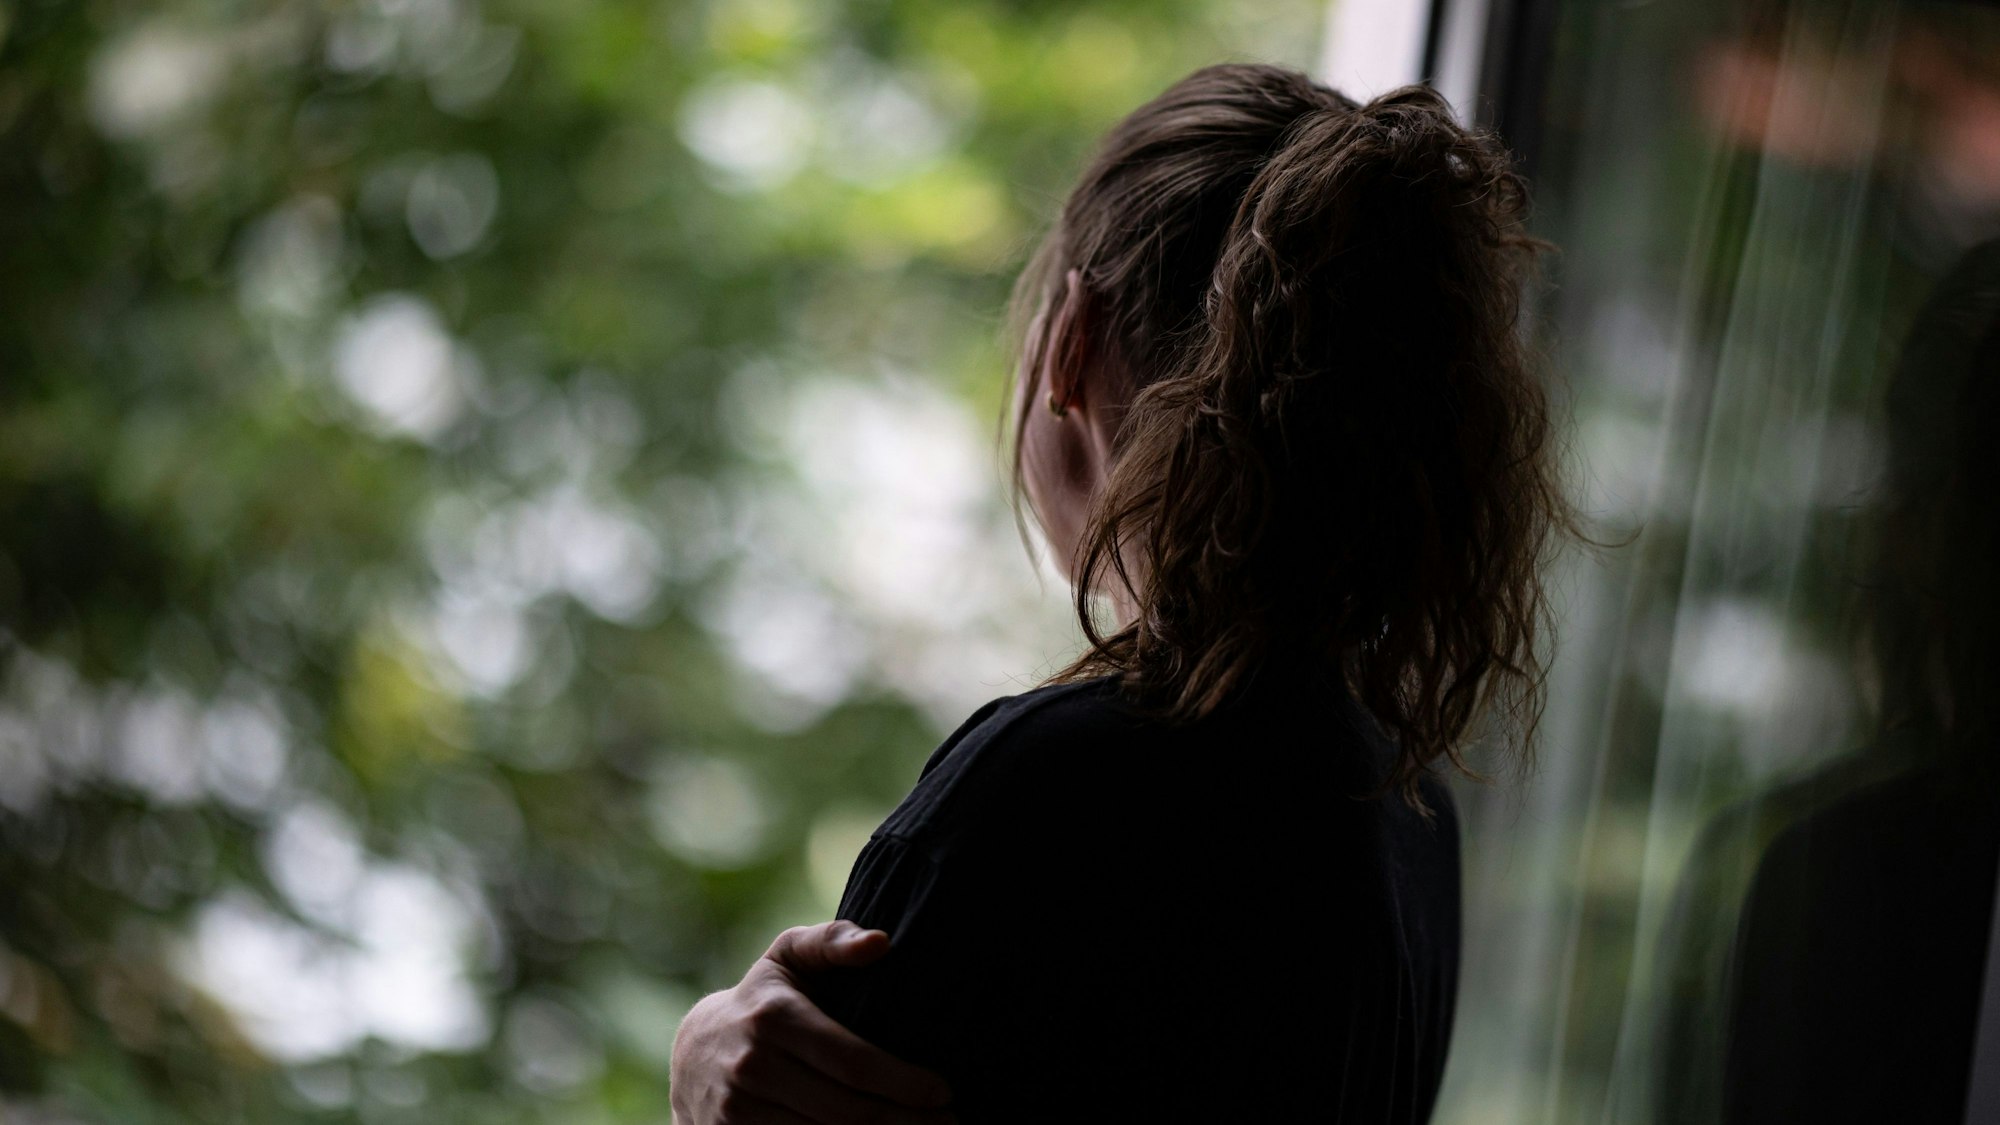 Eine Jugendliche steht gedankenversunken am Fenster.